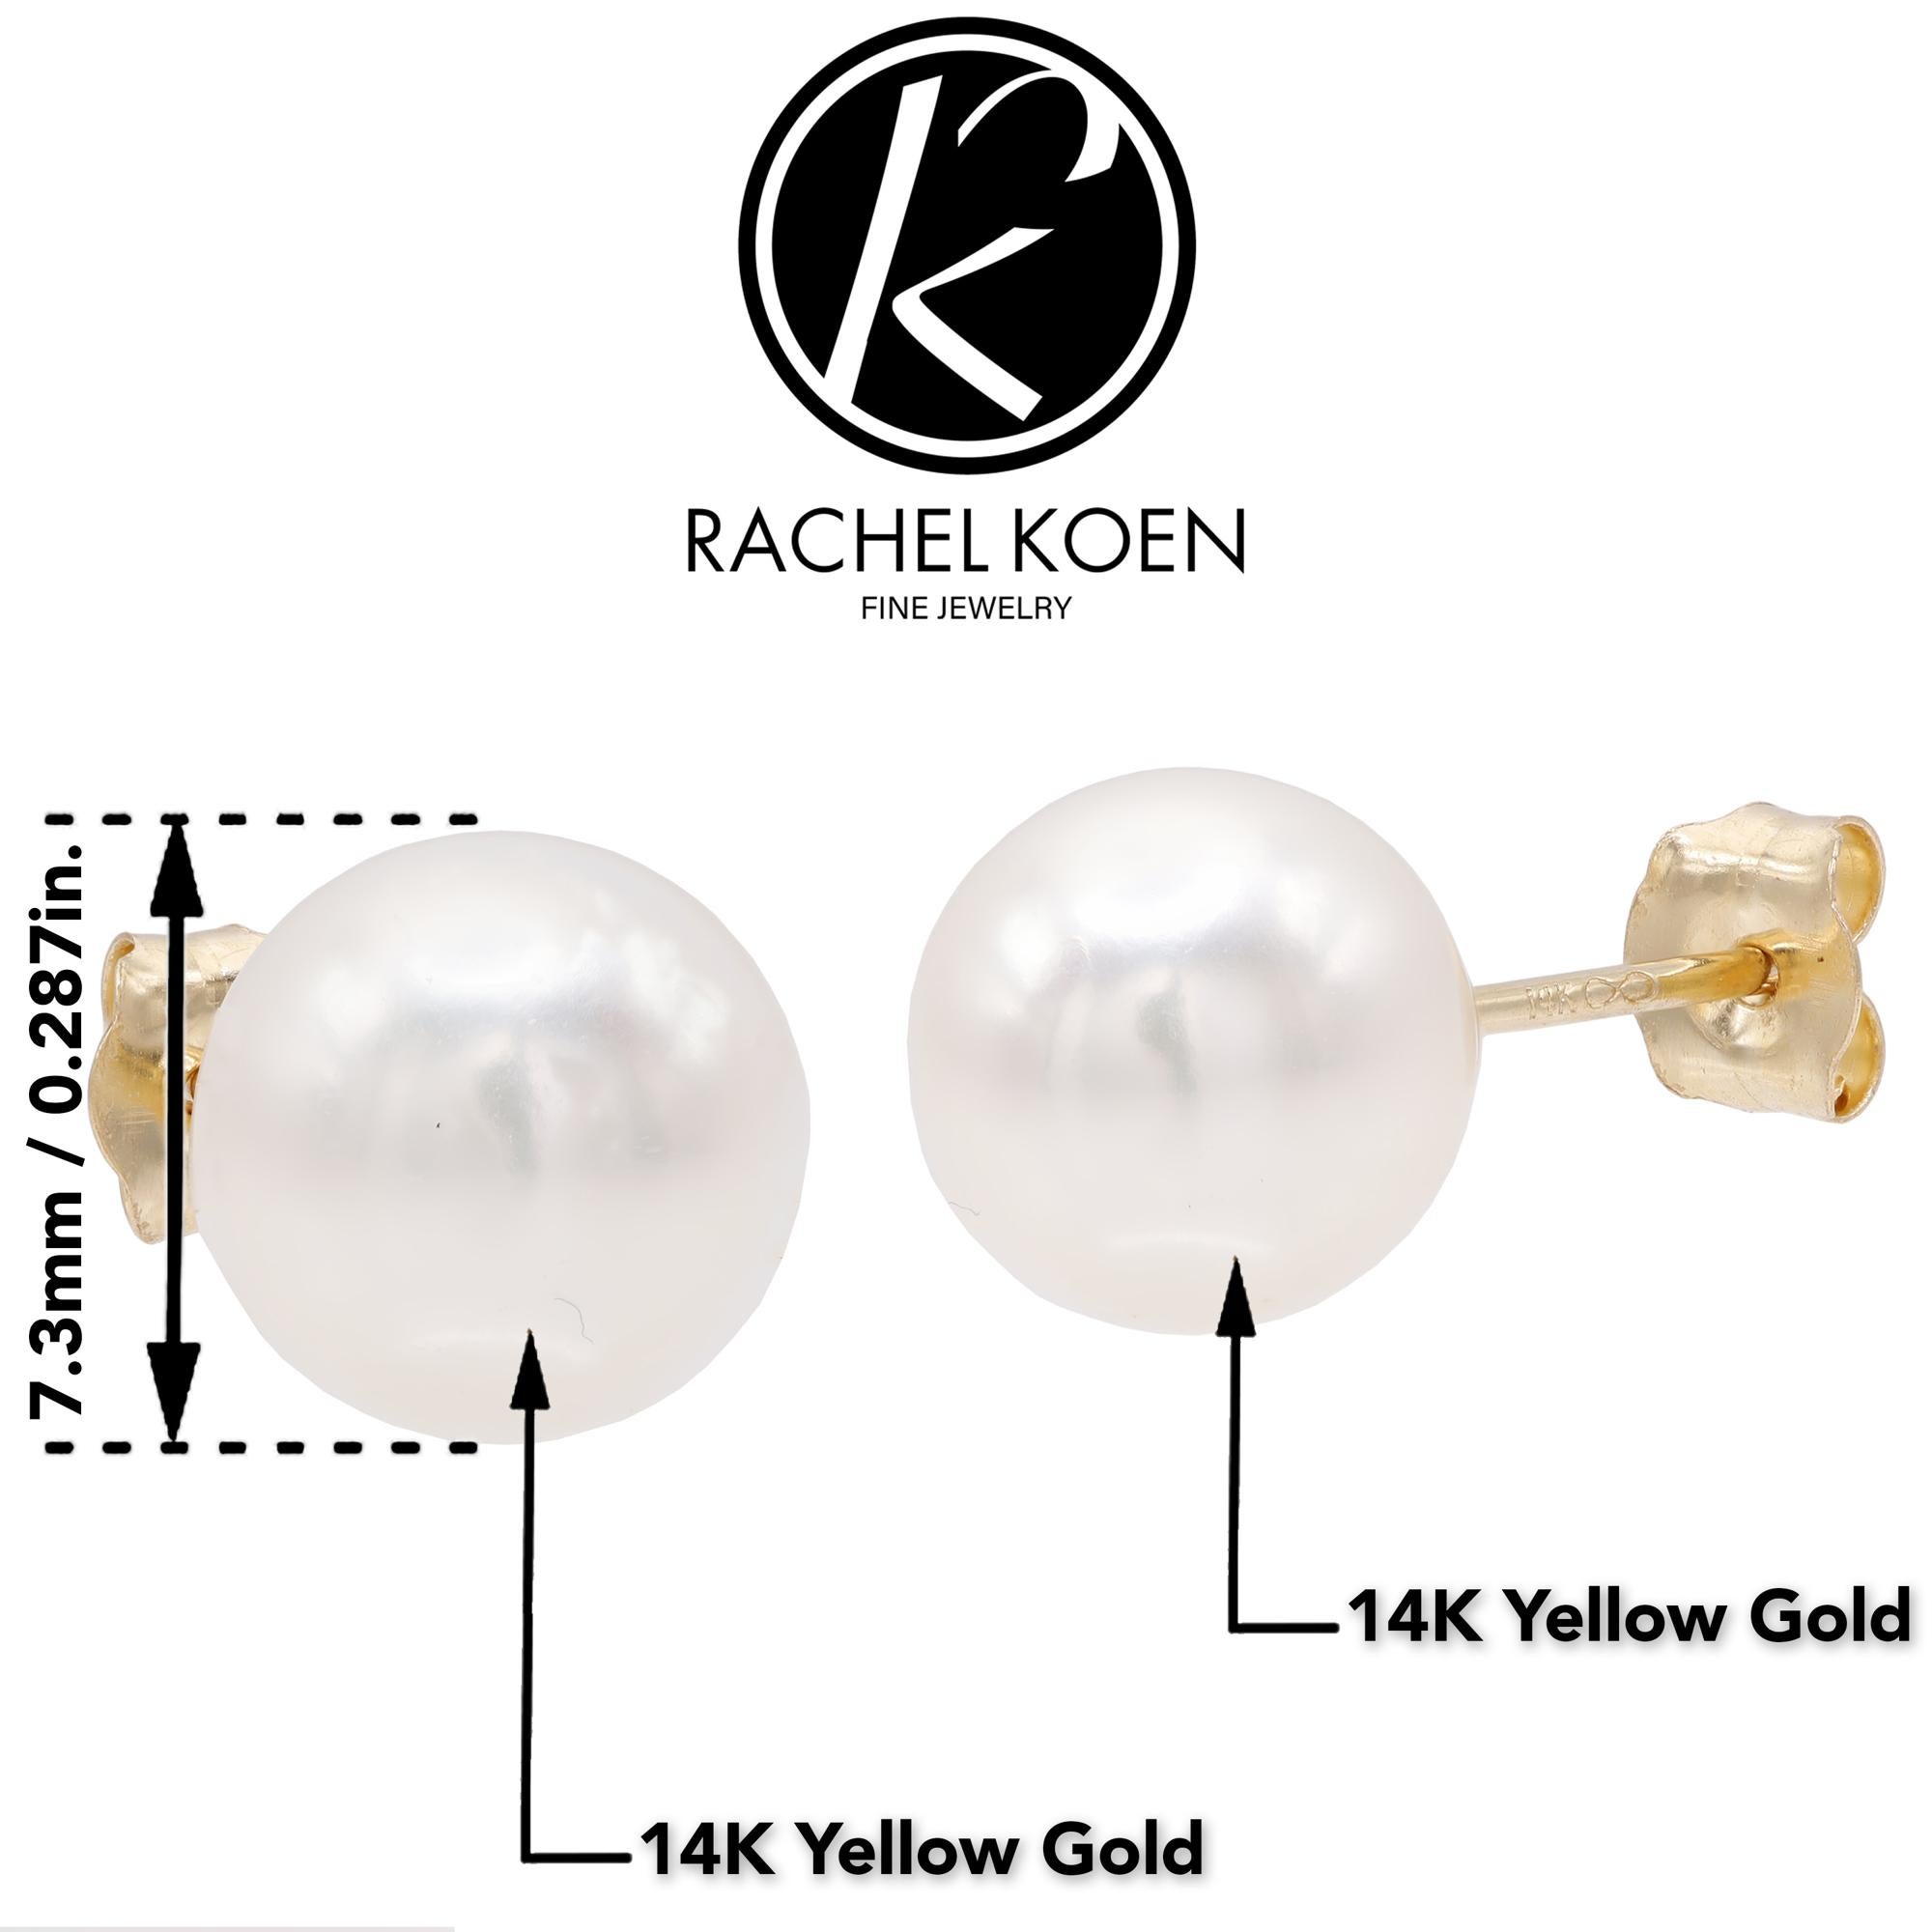 Rachel Koen Fresh Water White Pearl Stud Earrings 14K Yellow Gold For Sale 1